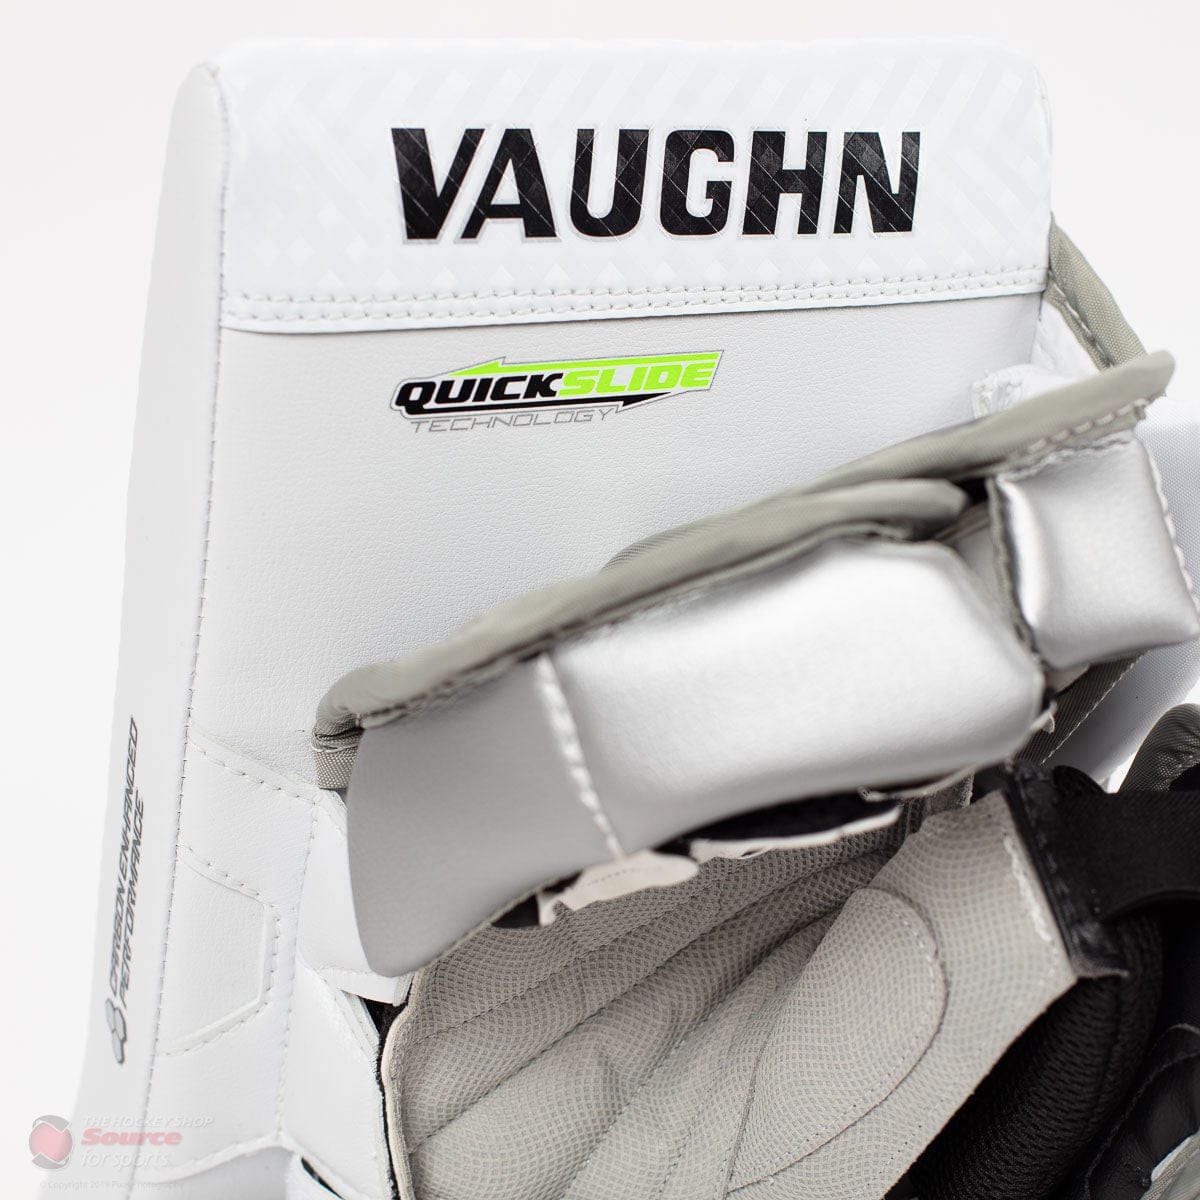 Vaughn Velocity Pro V Elite 2 Pro Carbon Senior Goalie Blocker